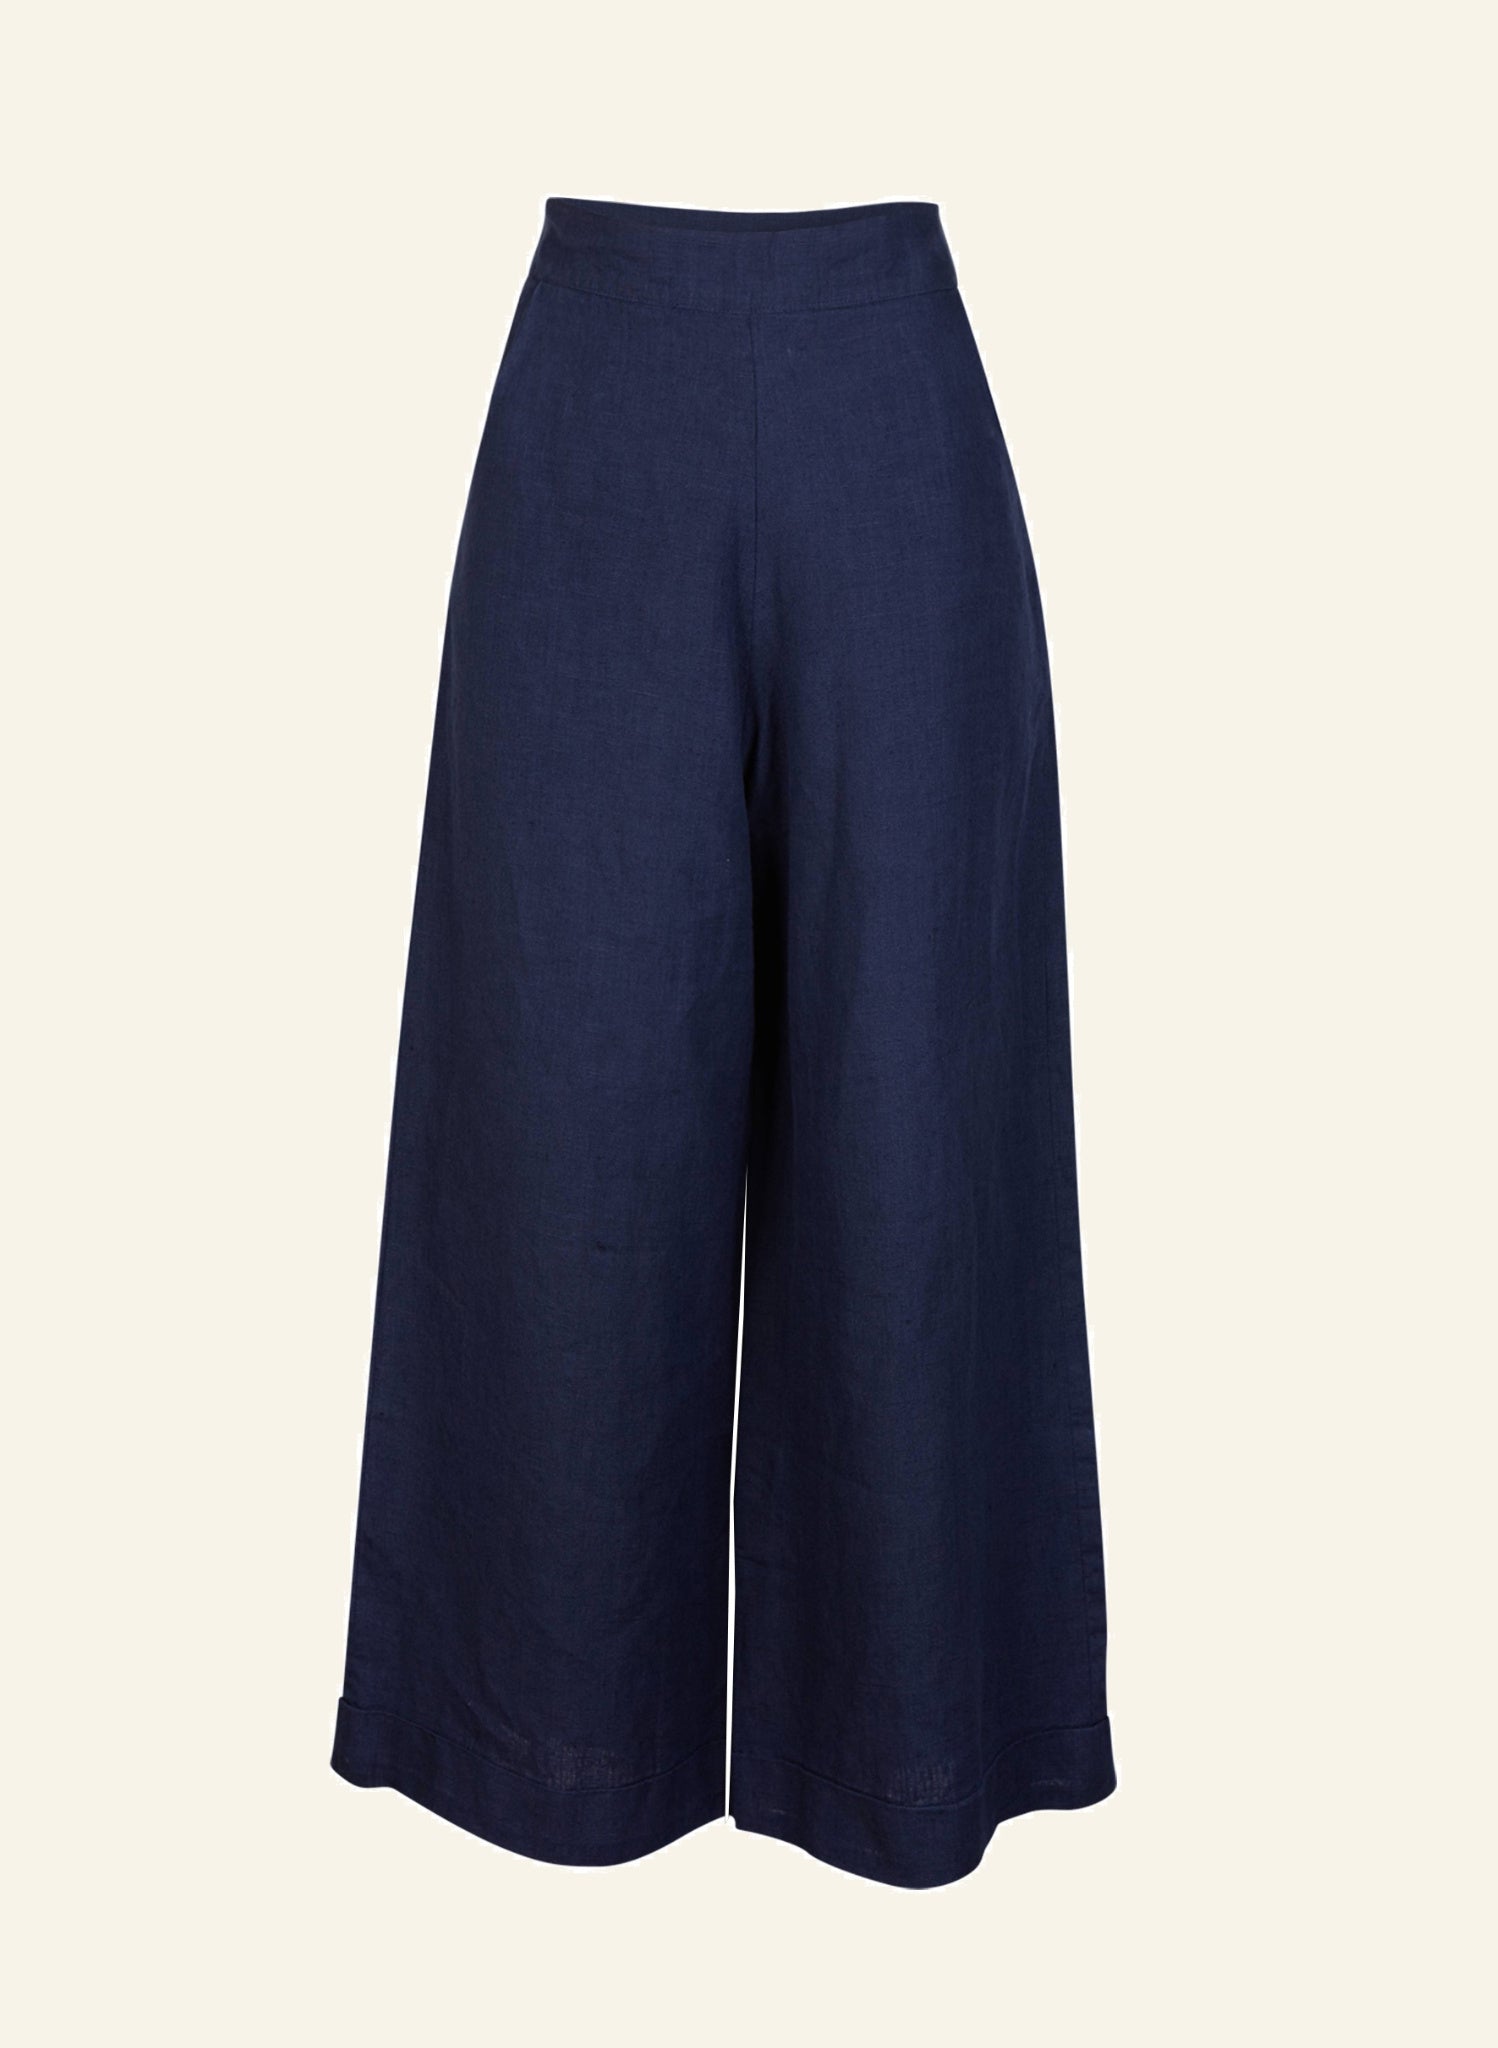 Josephine - Navy Linen Trousers